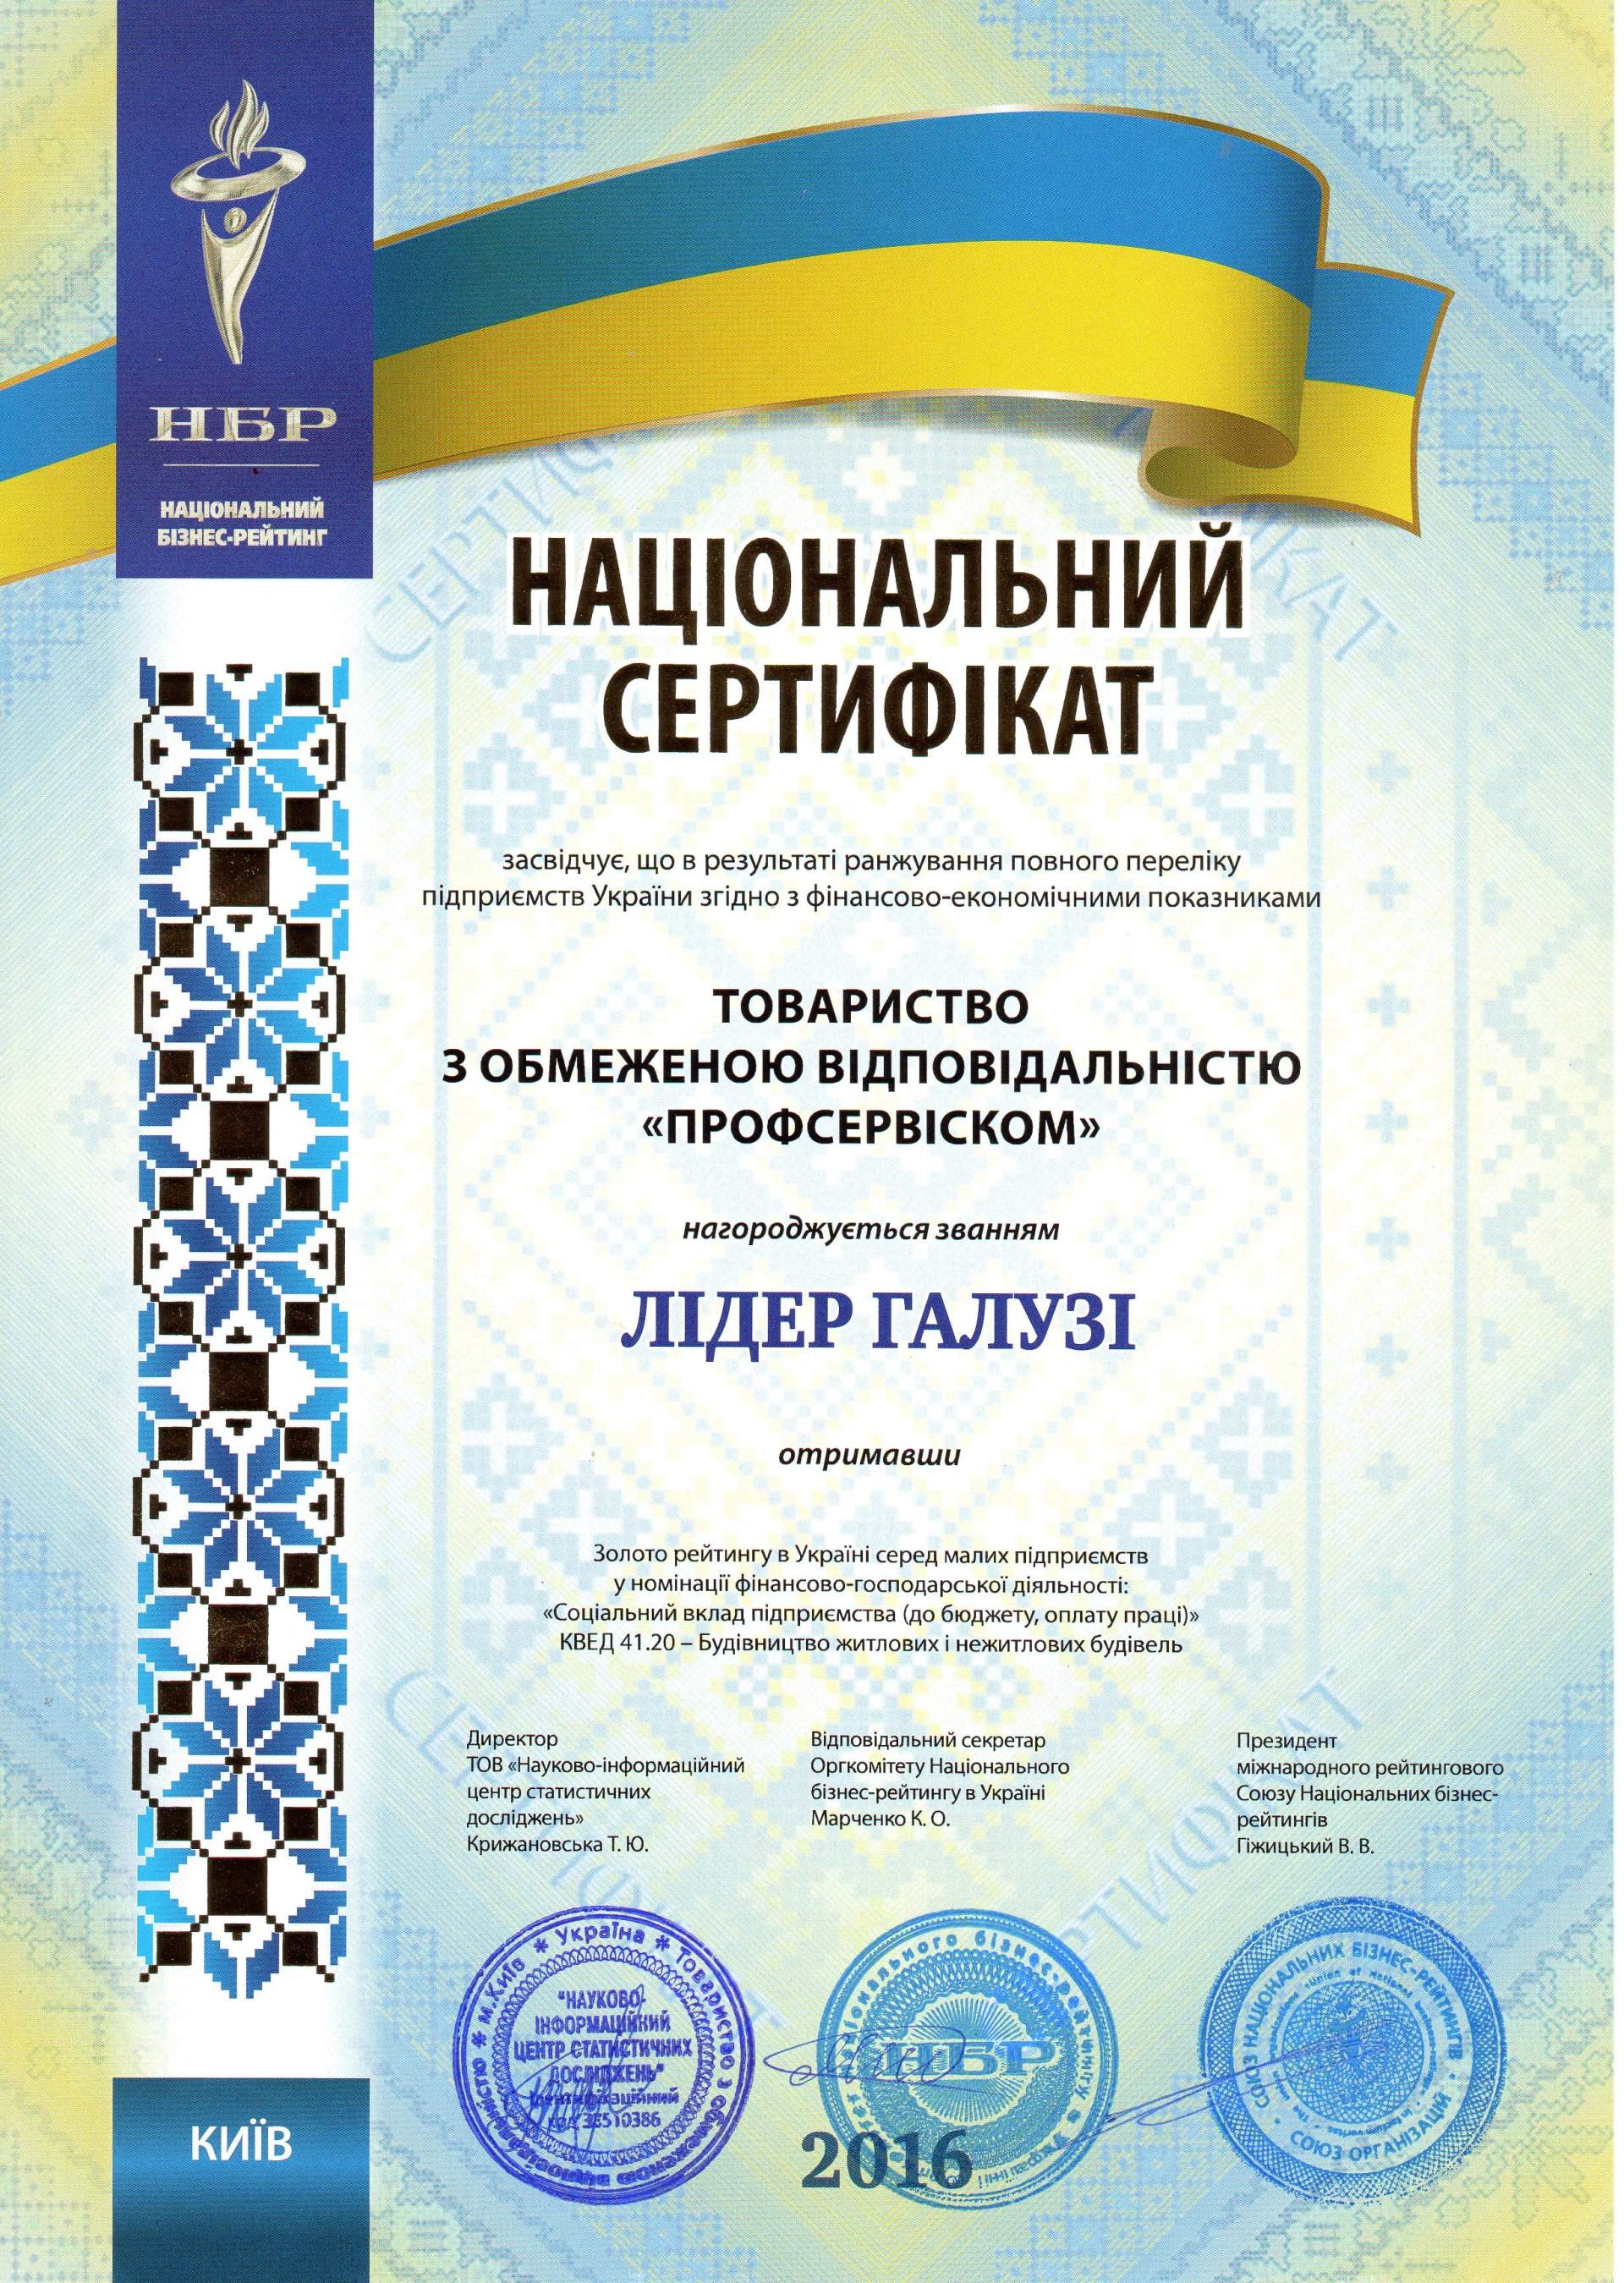 Благодарность СК профсервиском национальный сертификат